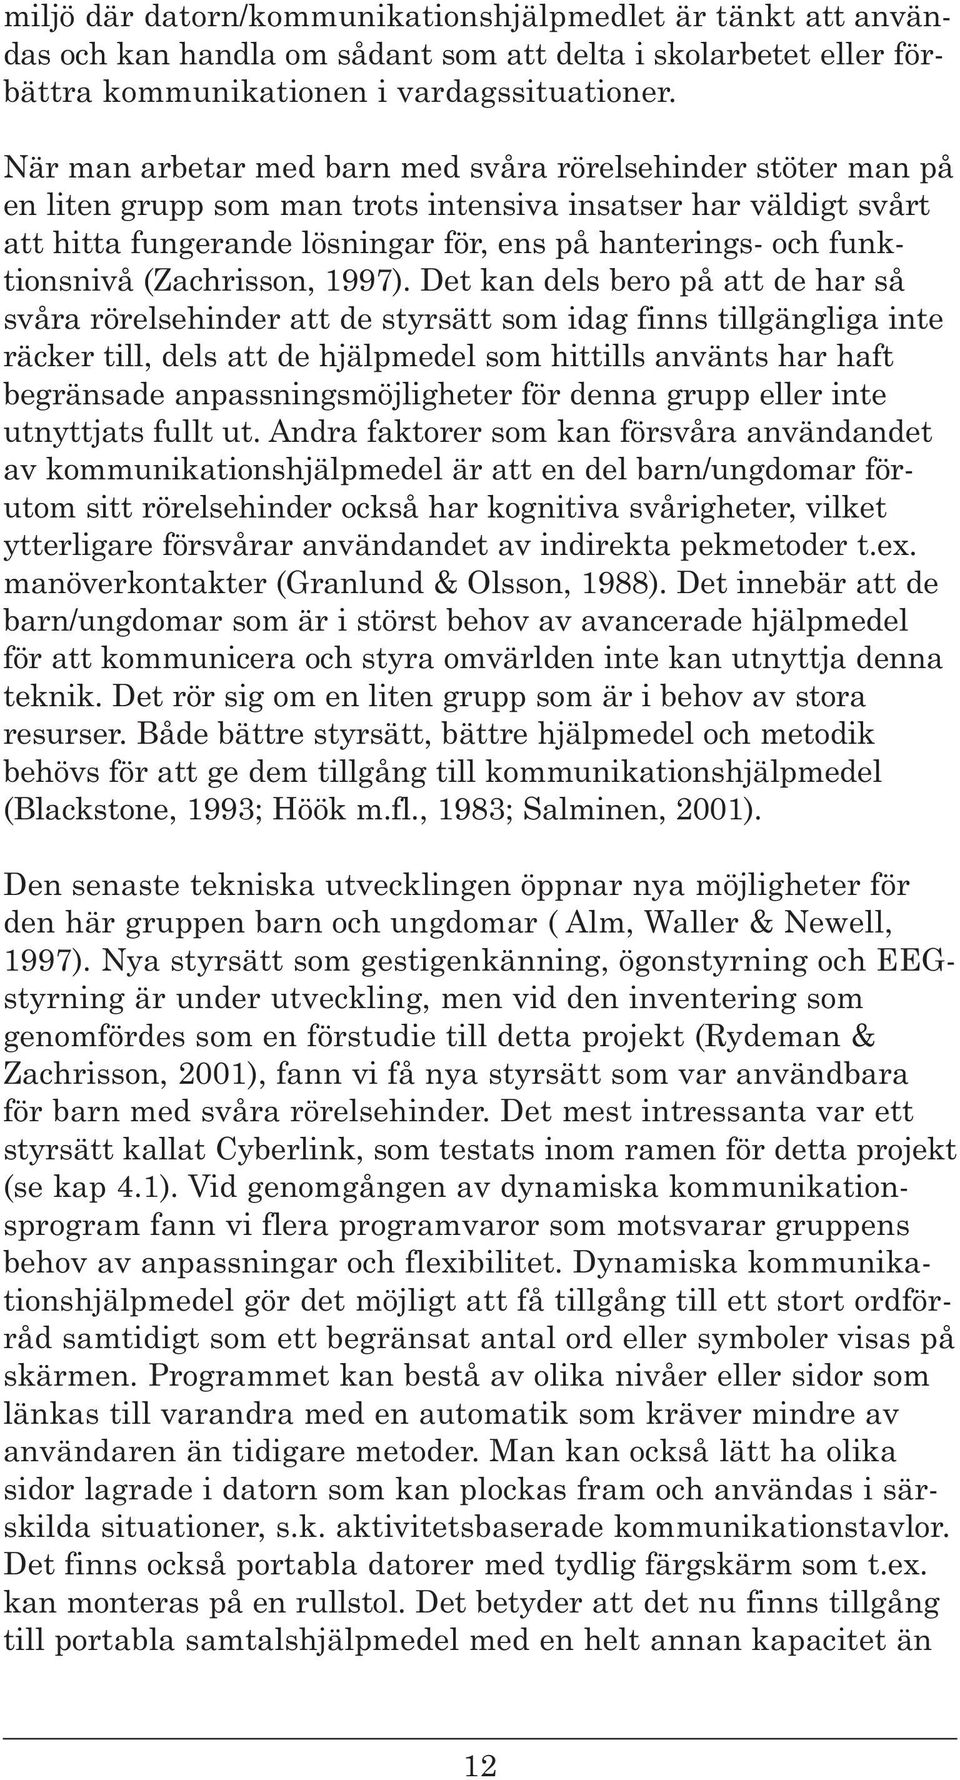 funktionsnivå (Zachrisson, 1997).